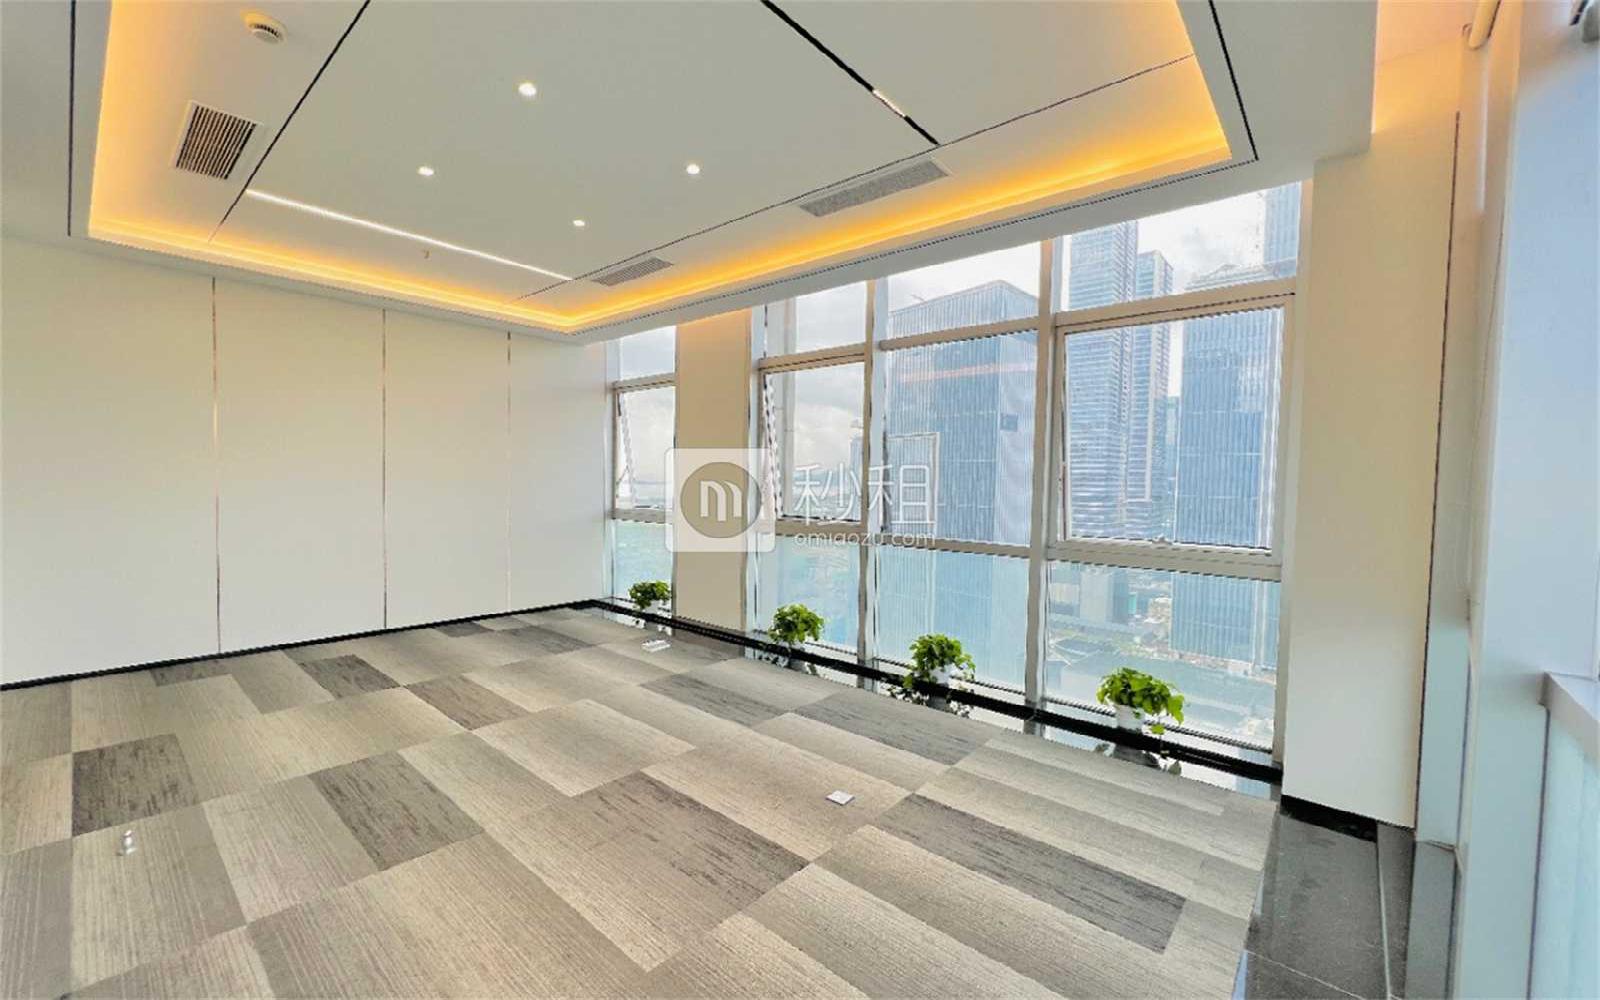 鹏润达商业广场写字楼出租628平米精装办公室98元/m².月